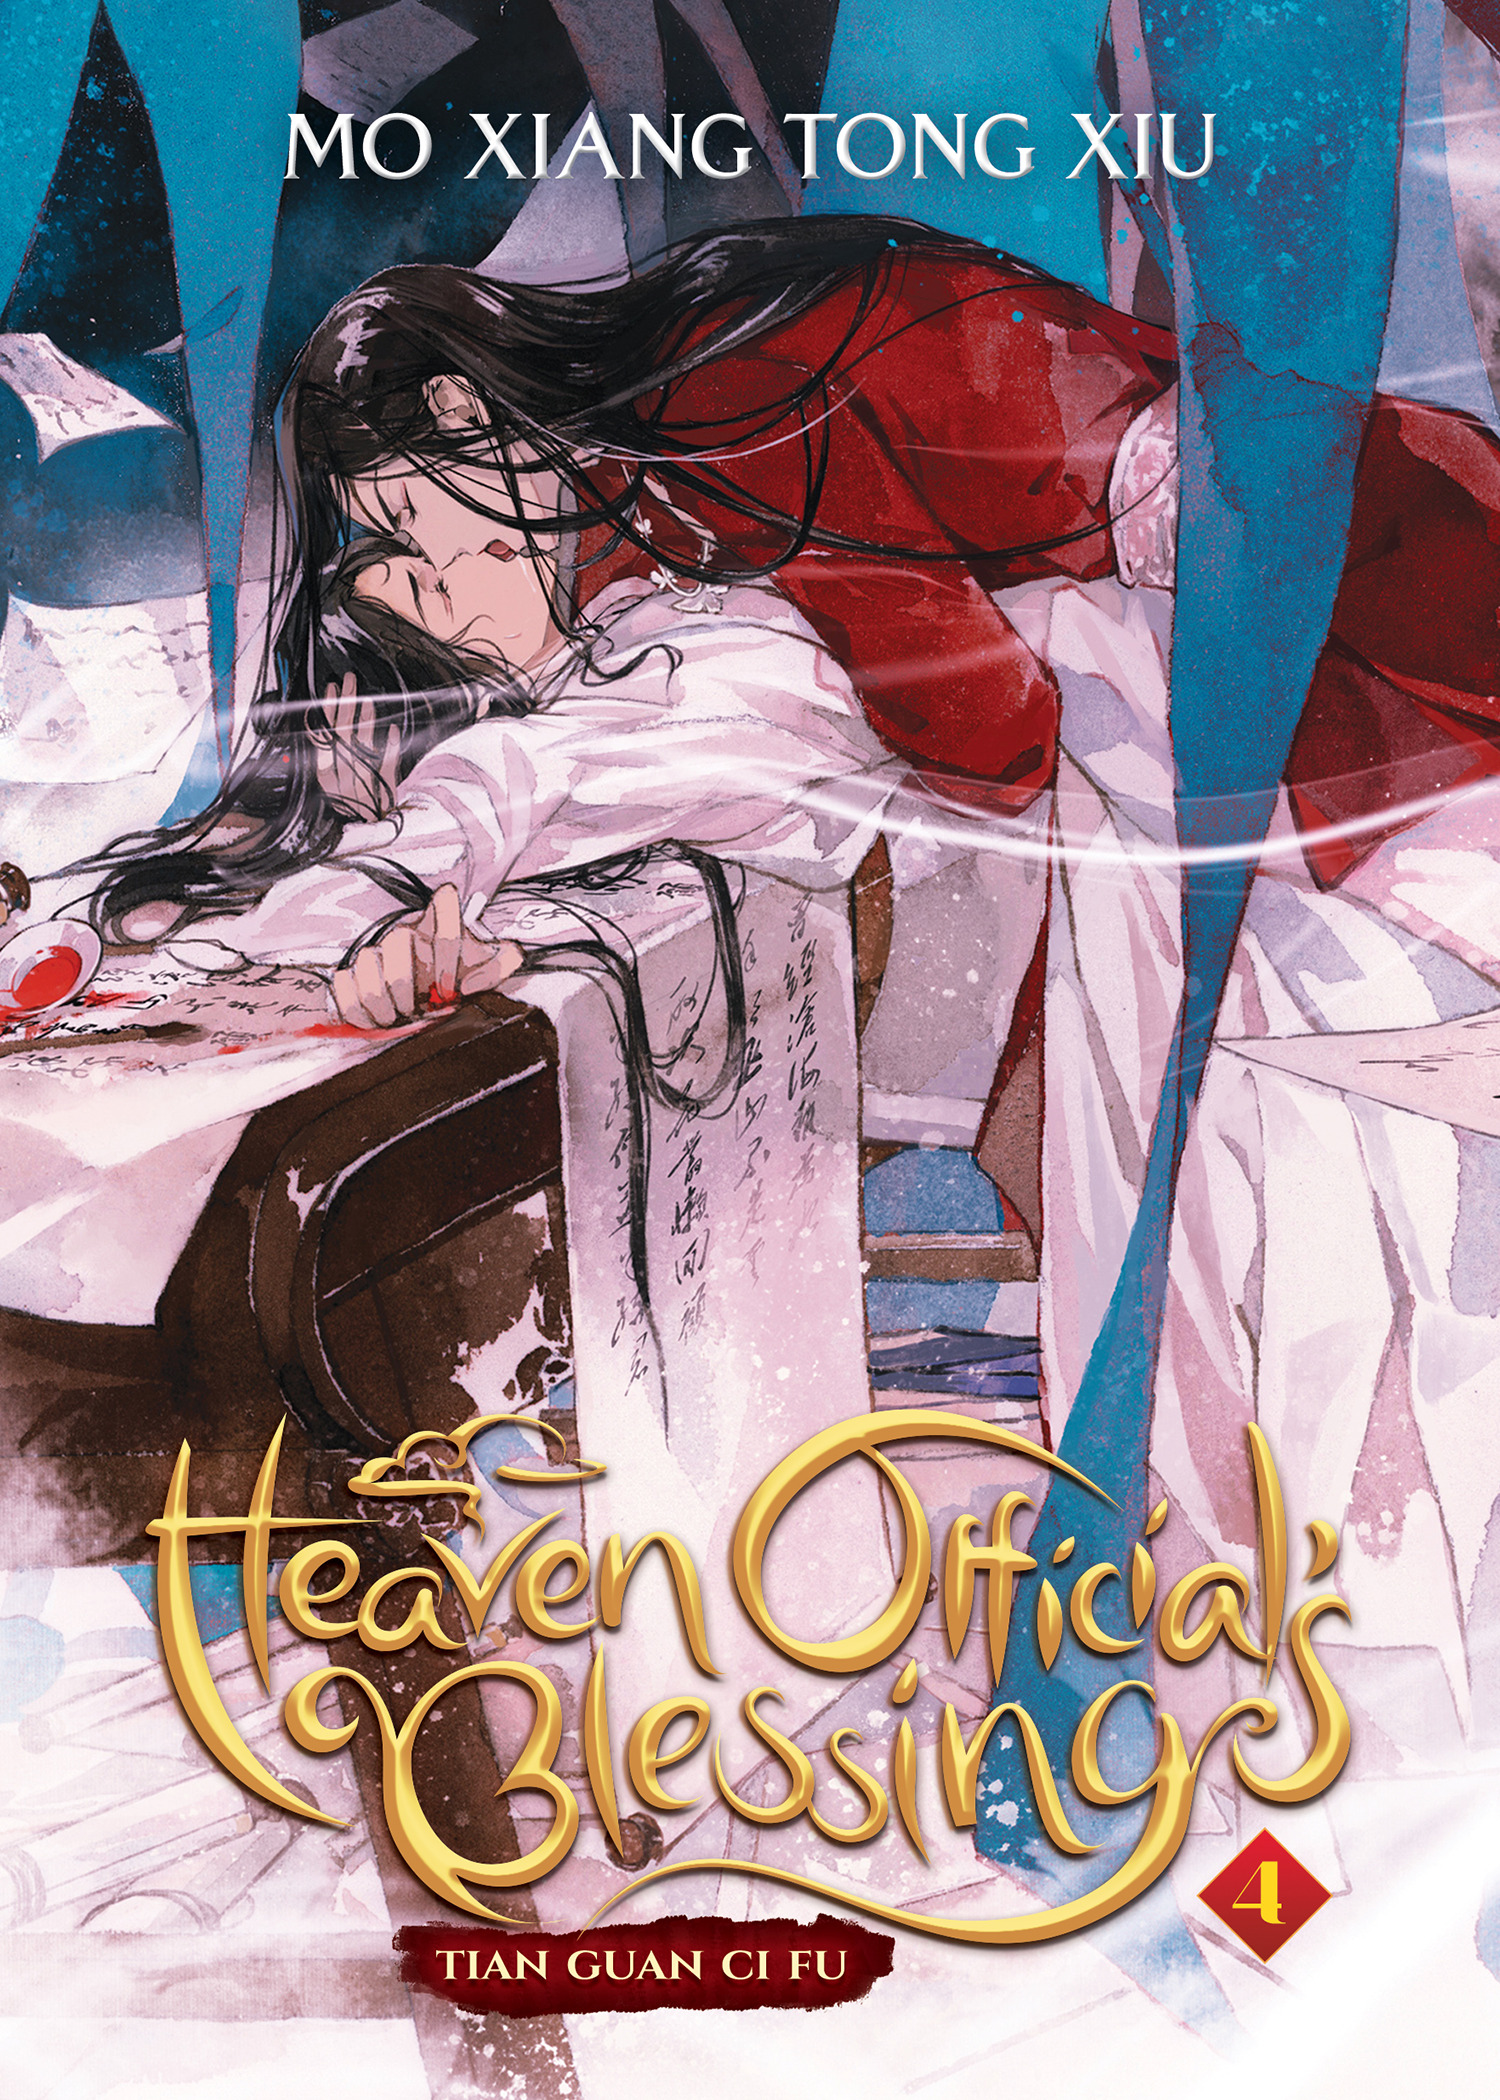 Heaven Official's Blessing: Tian Guan Ci Fu (Novel) Vol. 4 | Mo Xiang Tong Xiu